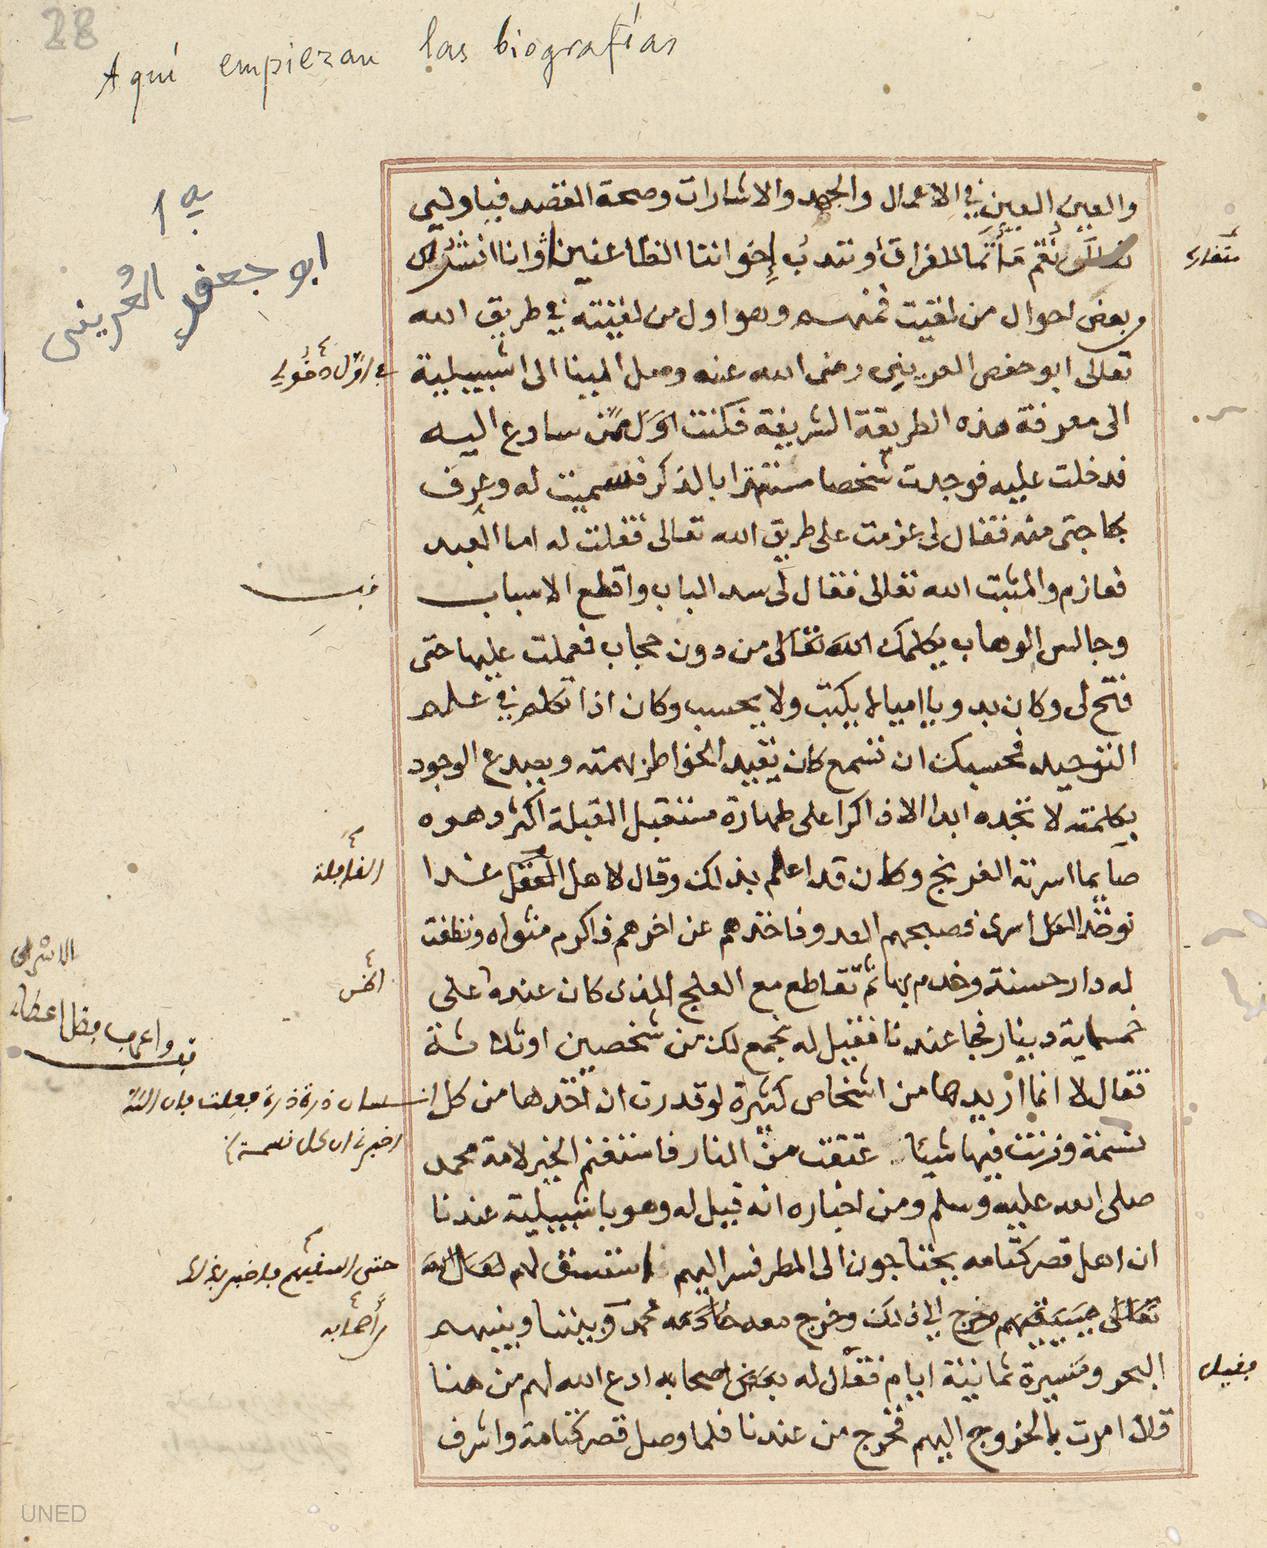 Risalat al-quds, anterior al siglo XIX